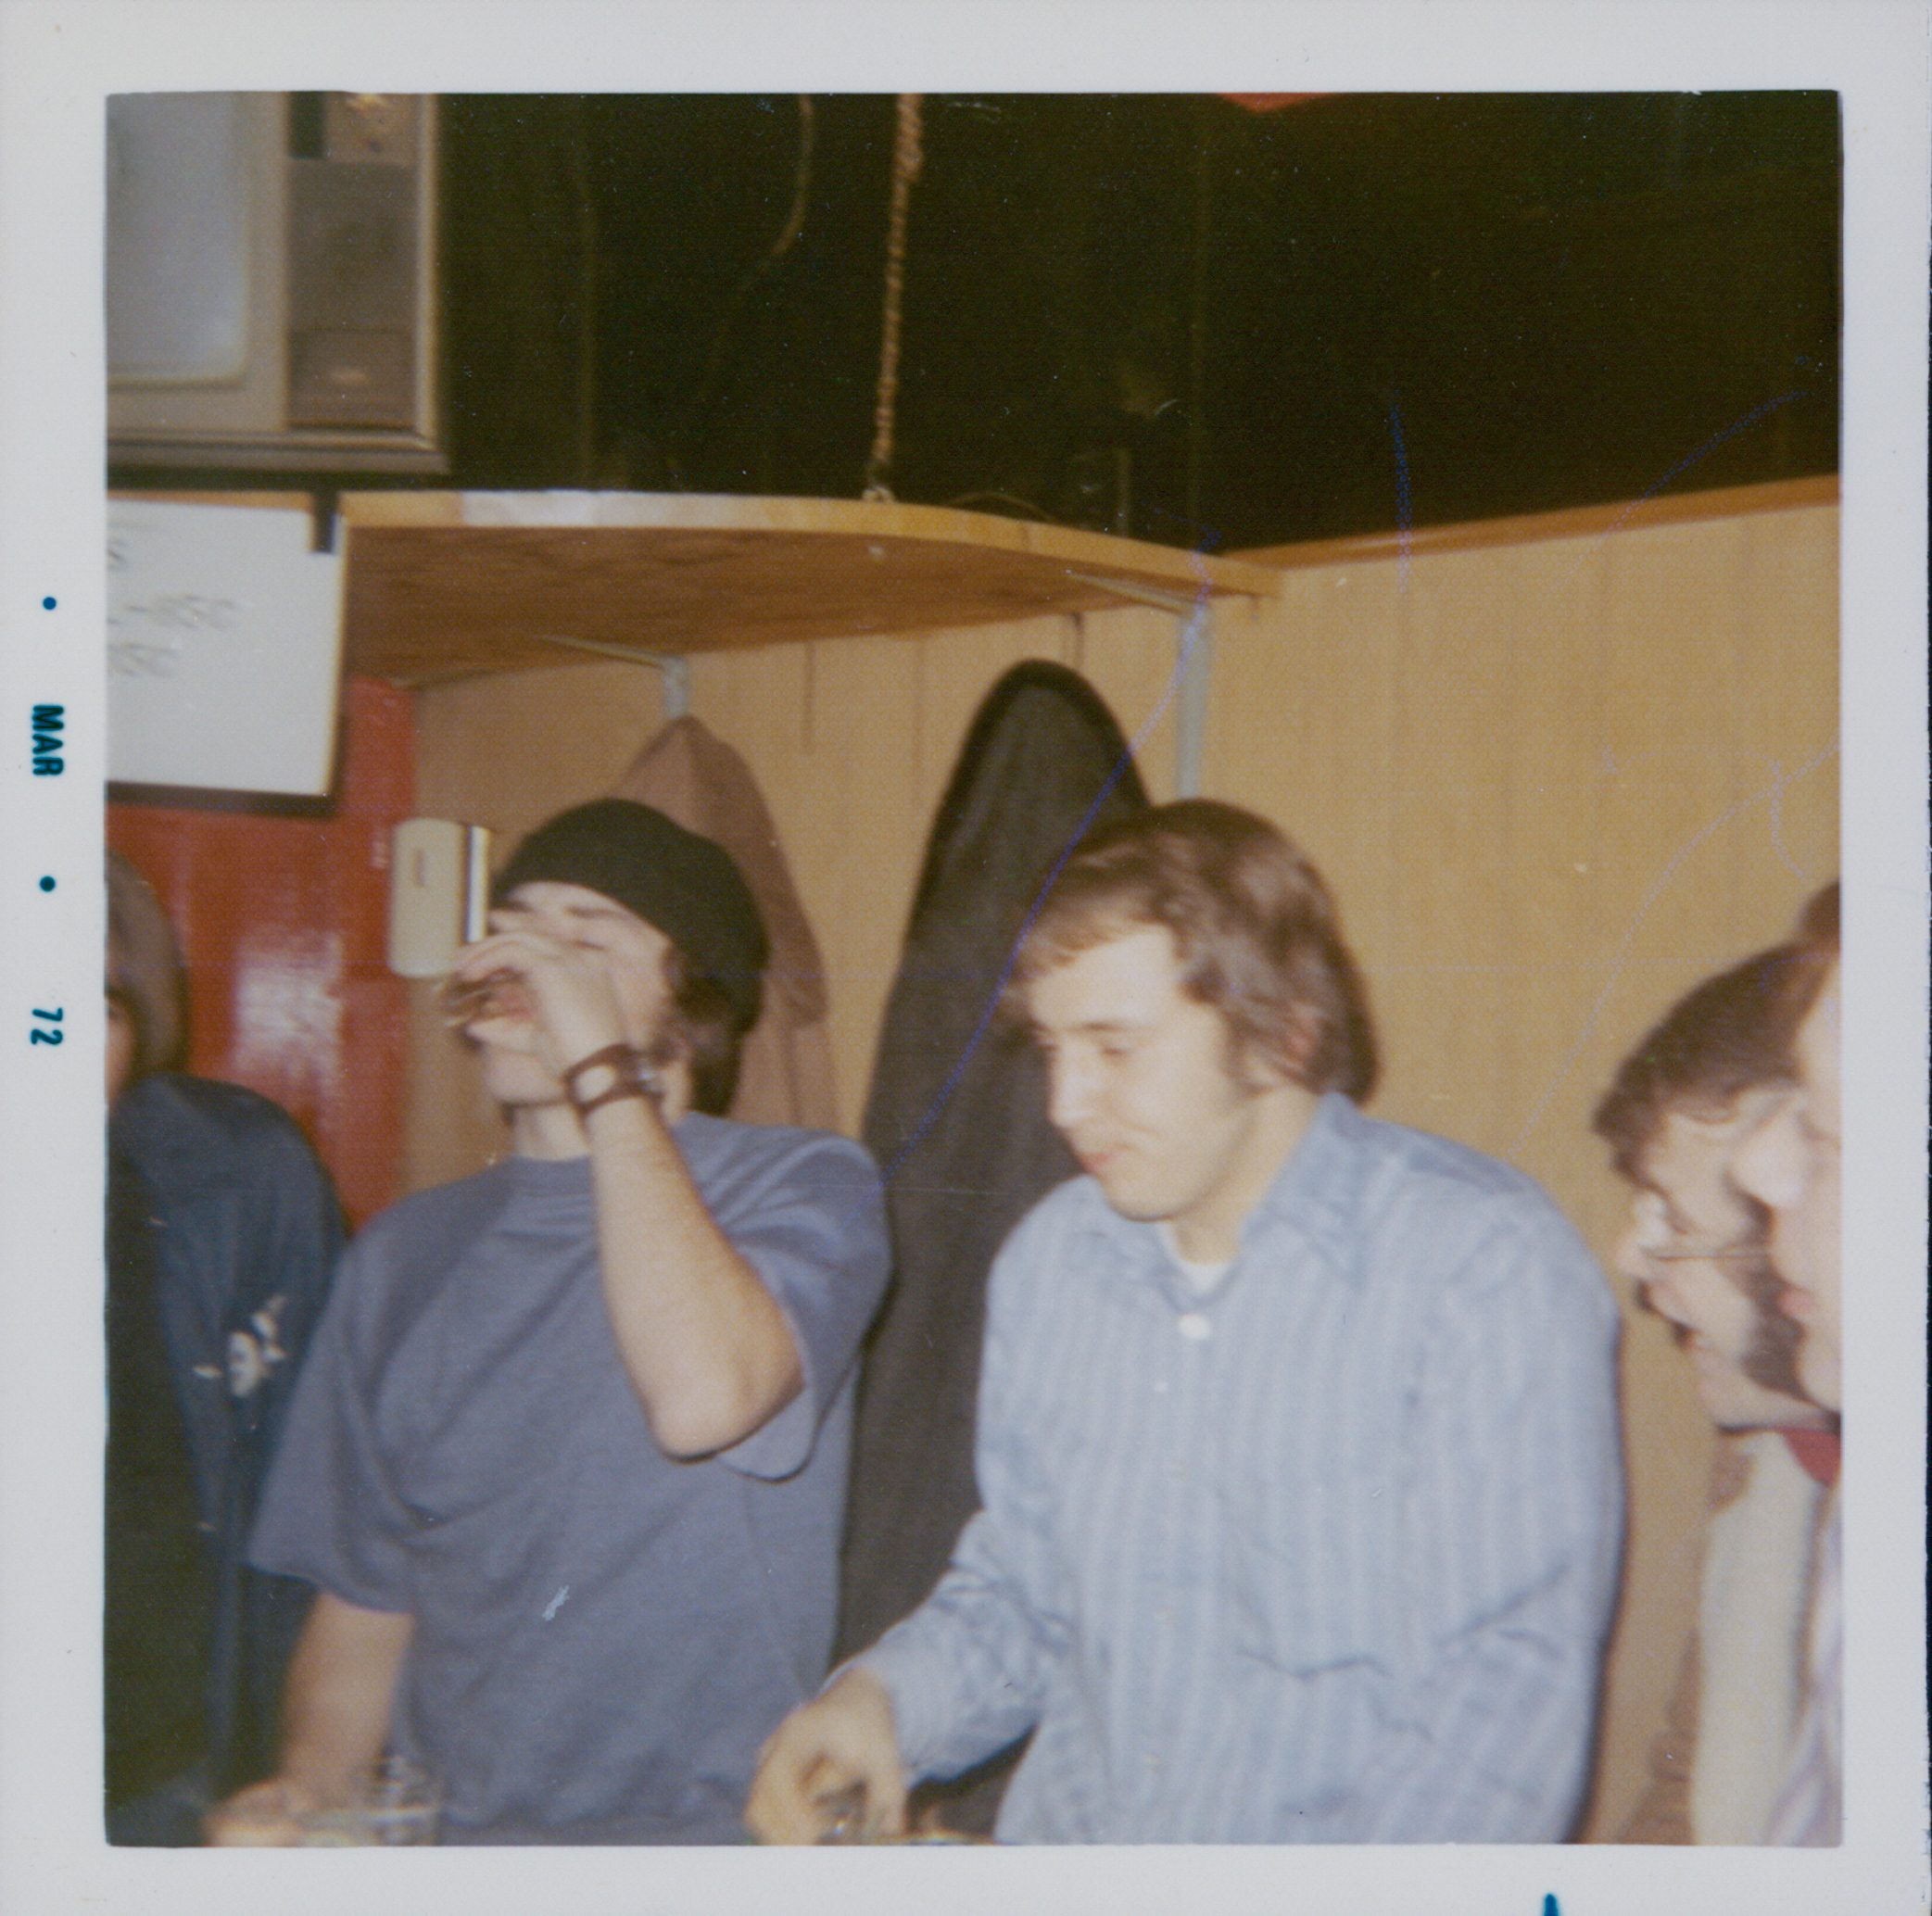 1972 election night at Ricks Tavern Nasca Seleman